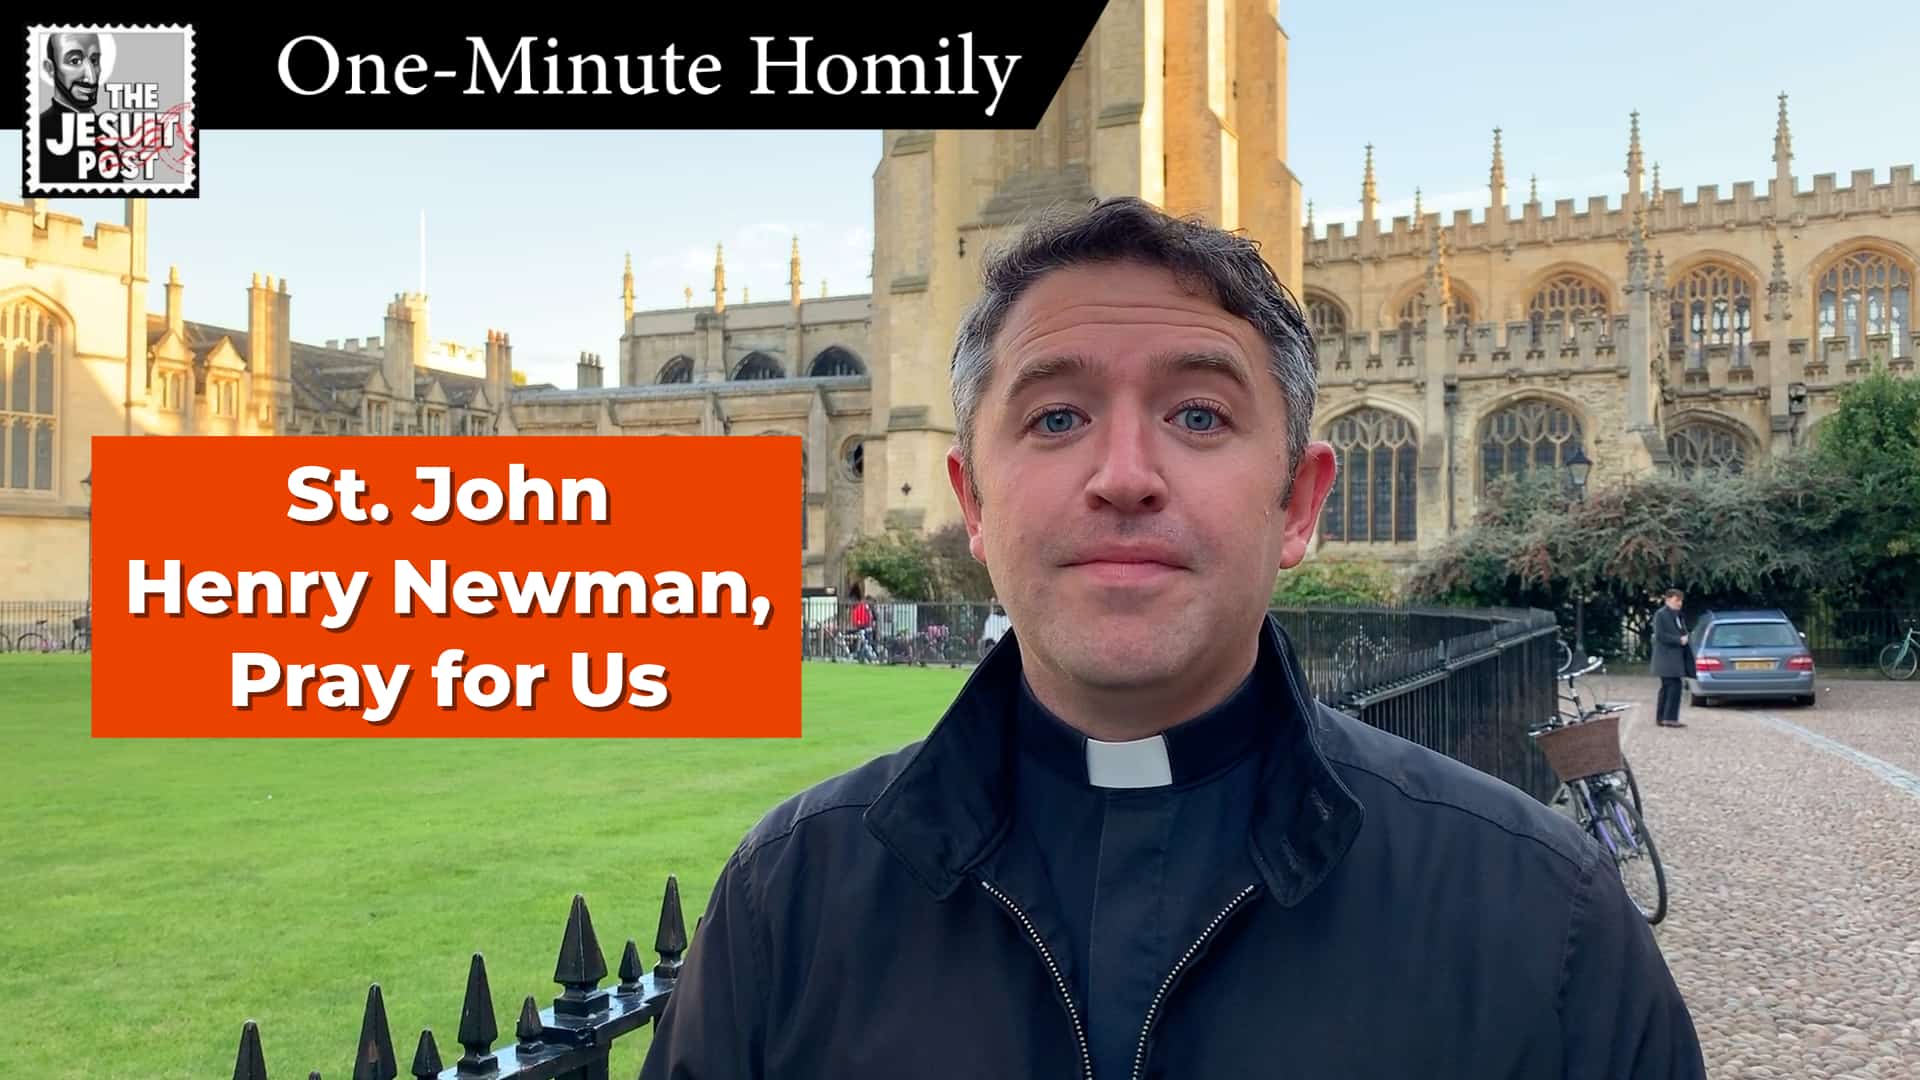 One-Minute Homily: “St. John Henry Newman, Pray for Us”